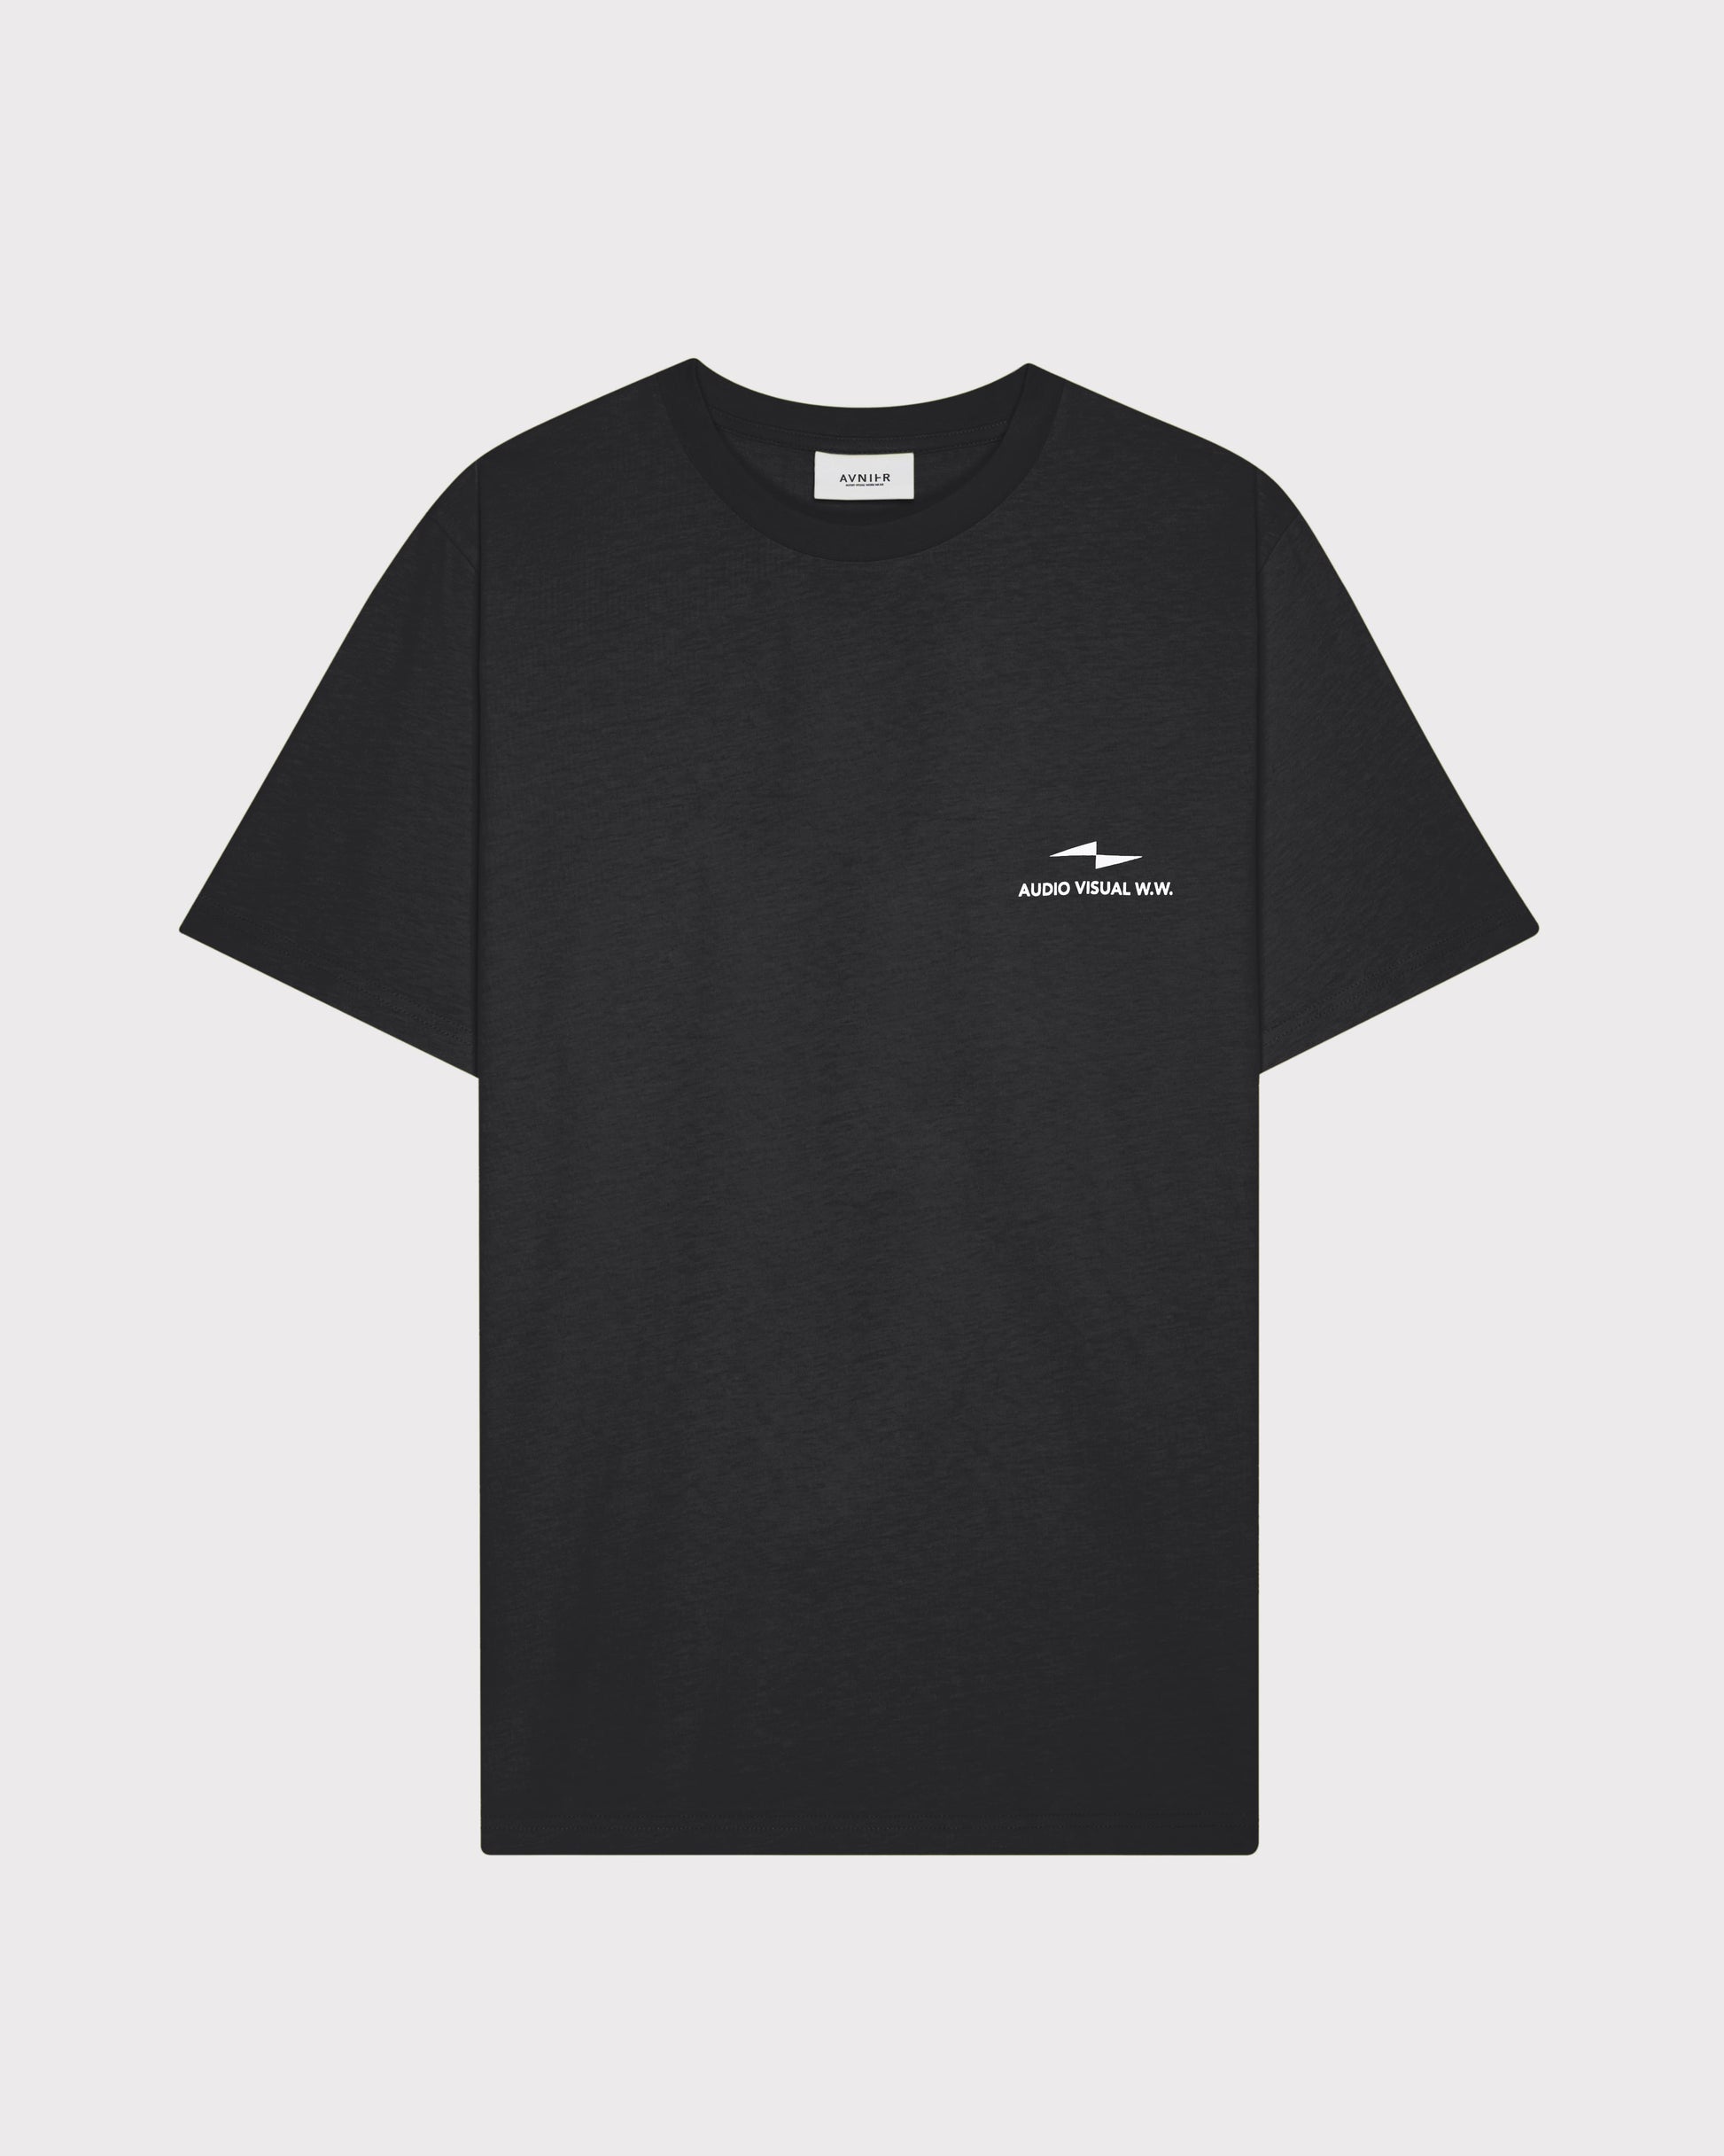 t-shirt-source-black-vertical-v3-avnier-audiovisual-work-wear-2-packshot-face - noir